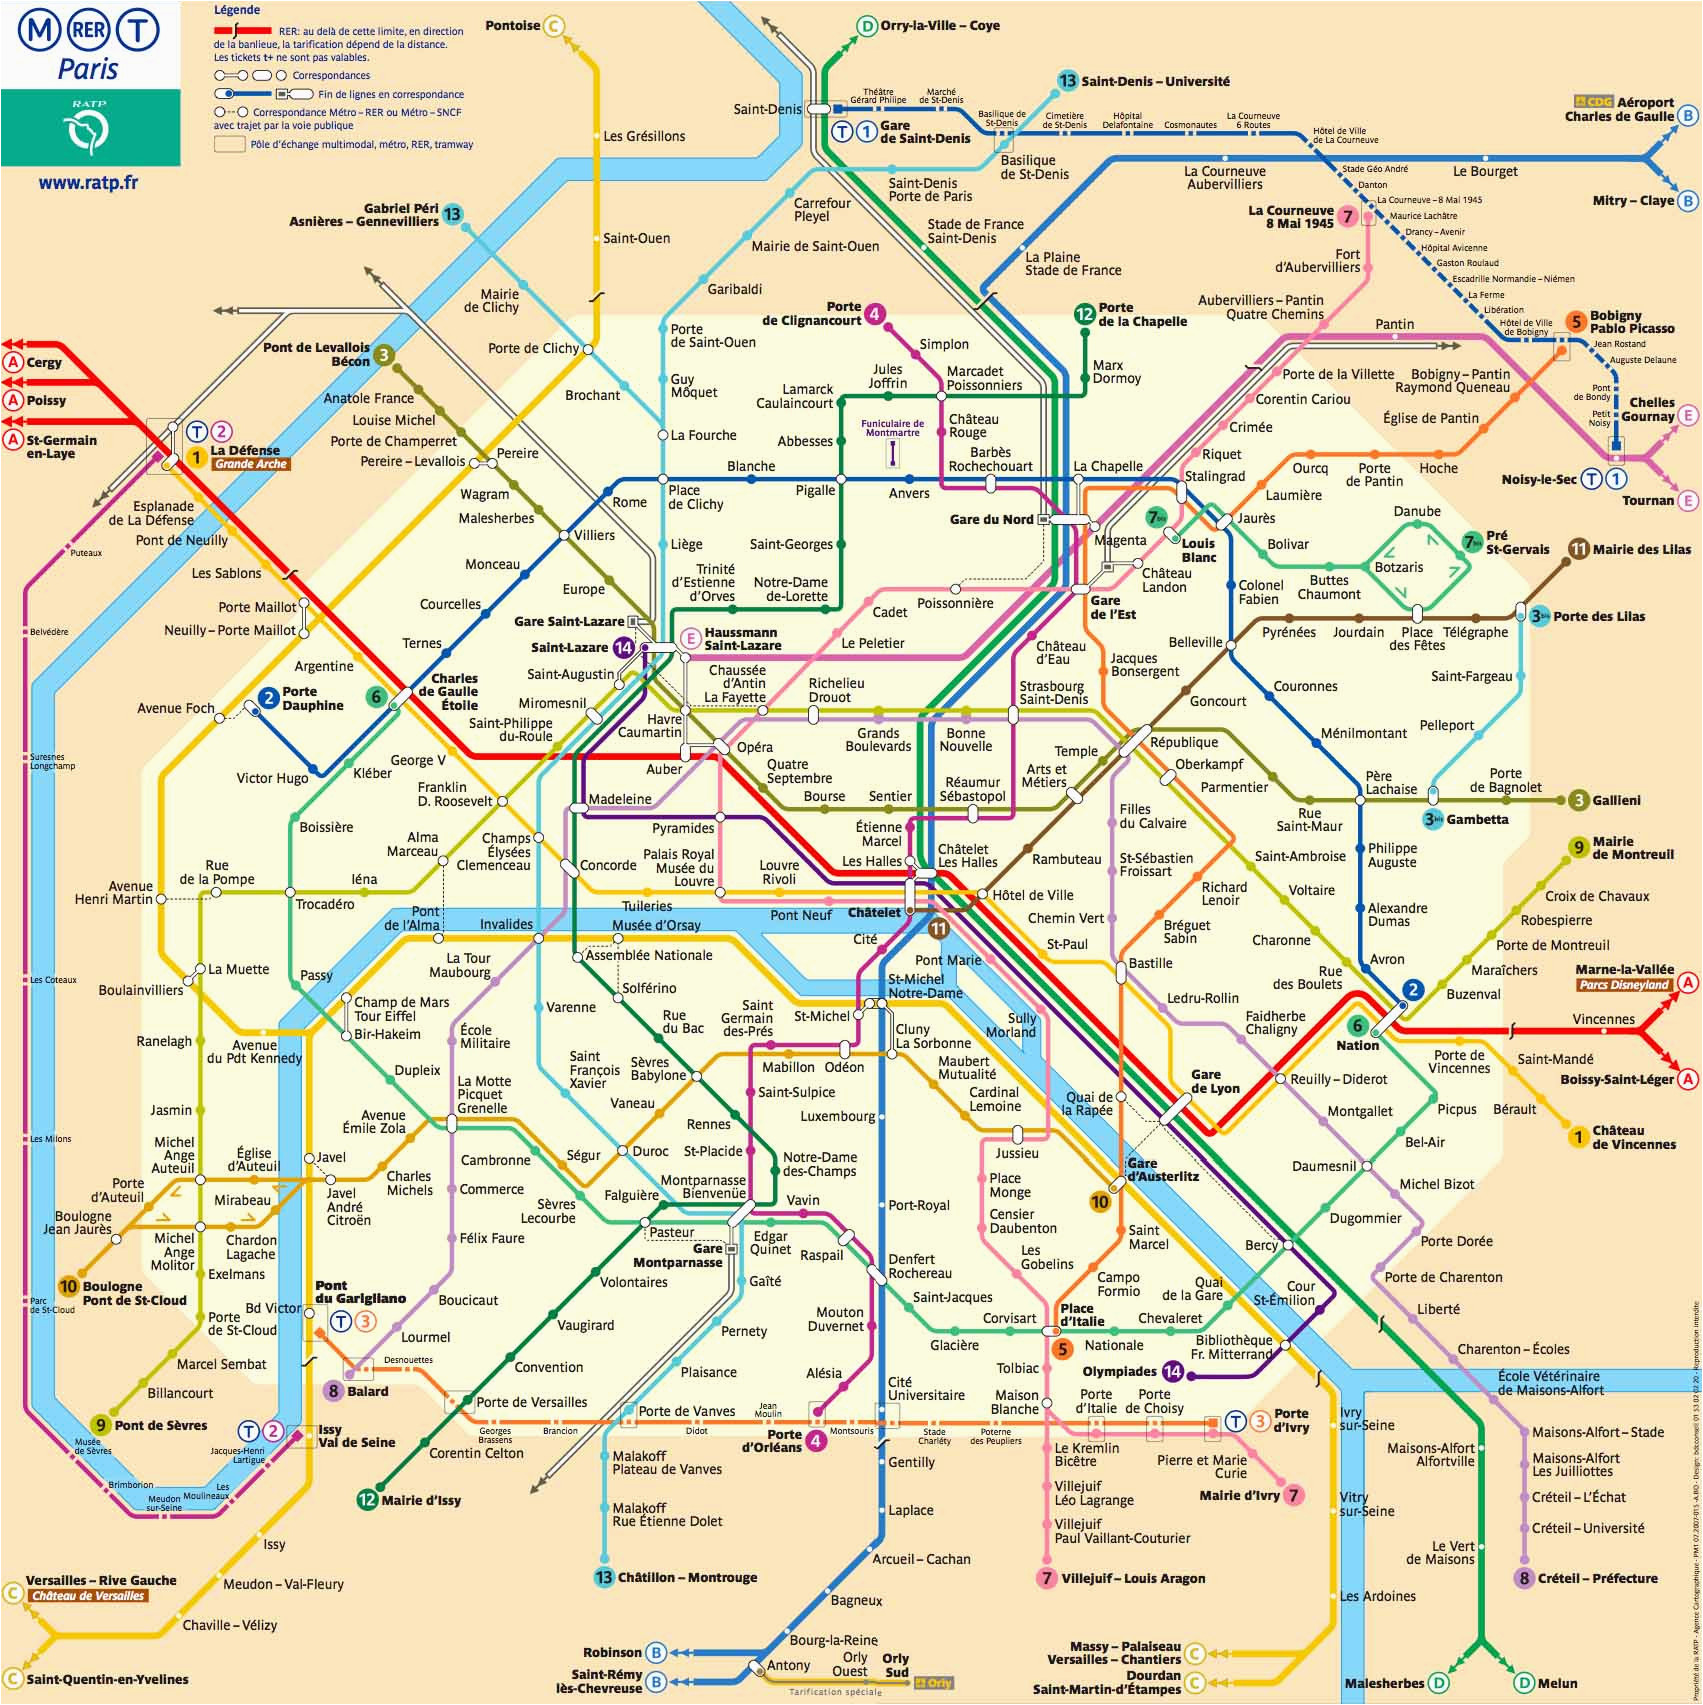 Paris France Subway Map Karte Plan Der Pariser Metro format Xl Metroplan Metrokarte